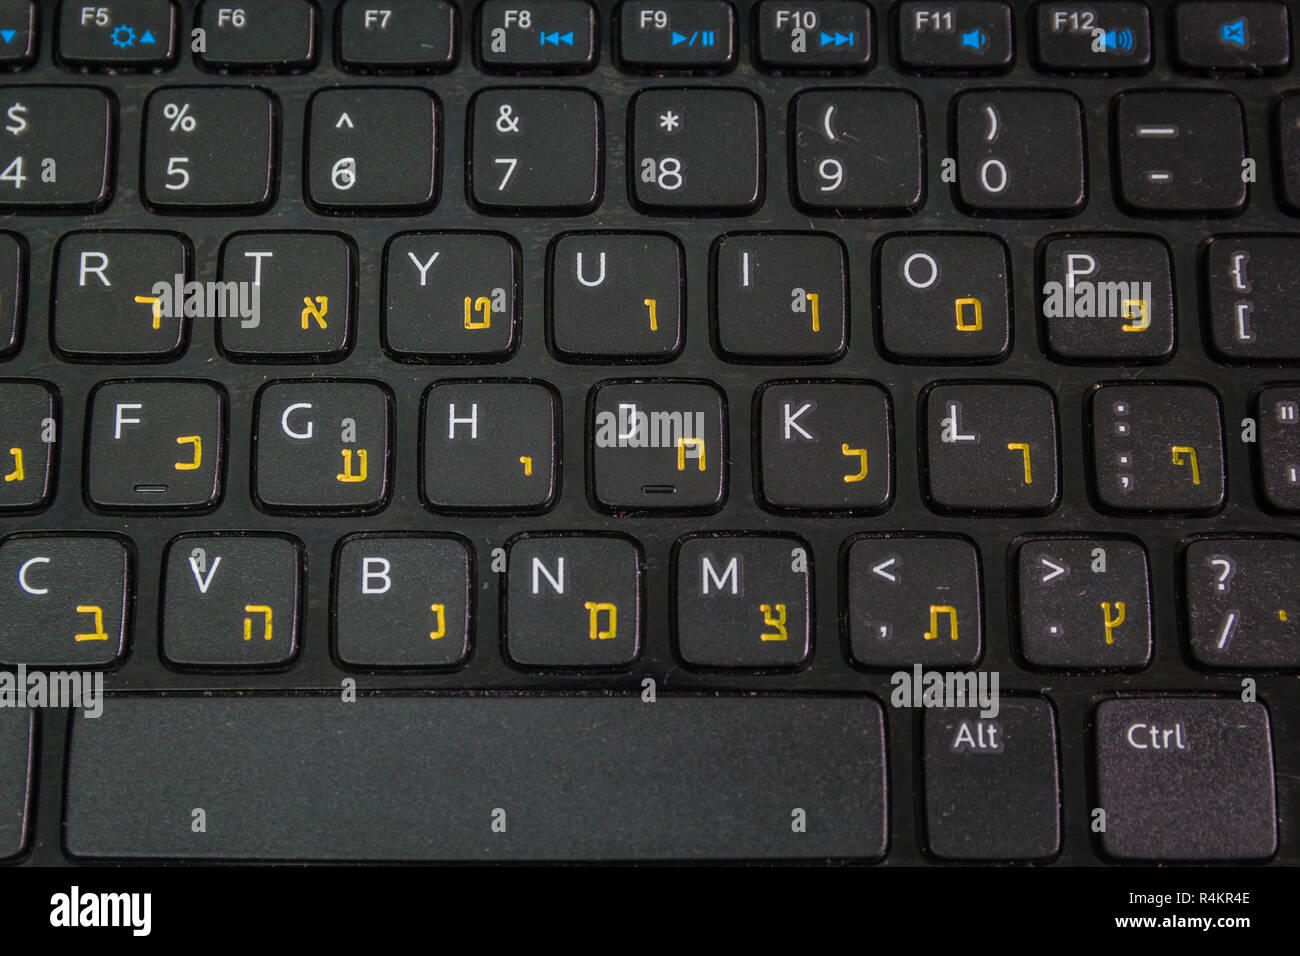 Tastatur mit Buchstaben in Hebräisch und Englisch - Laptop Tastatur -  Ansicht von Oben - Close up Stockfotografie - Alamy